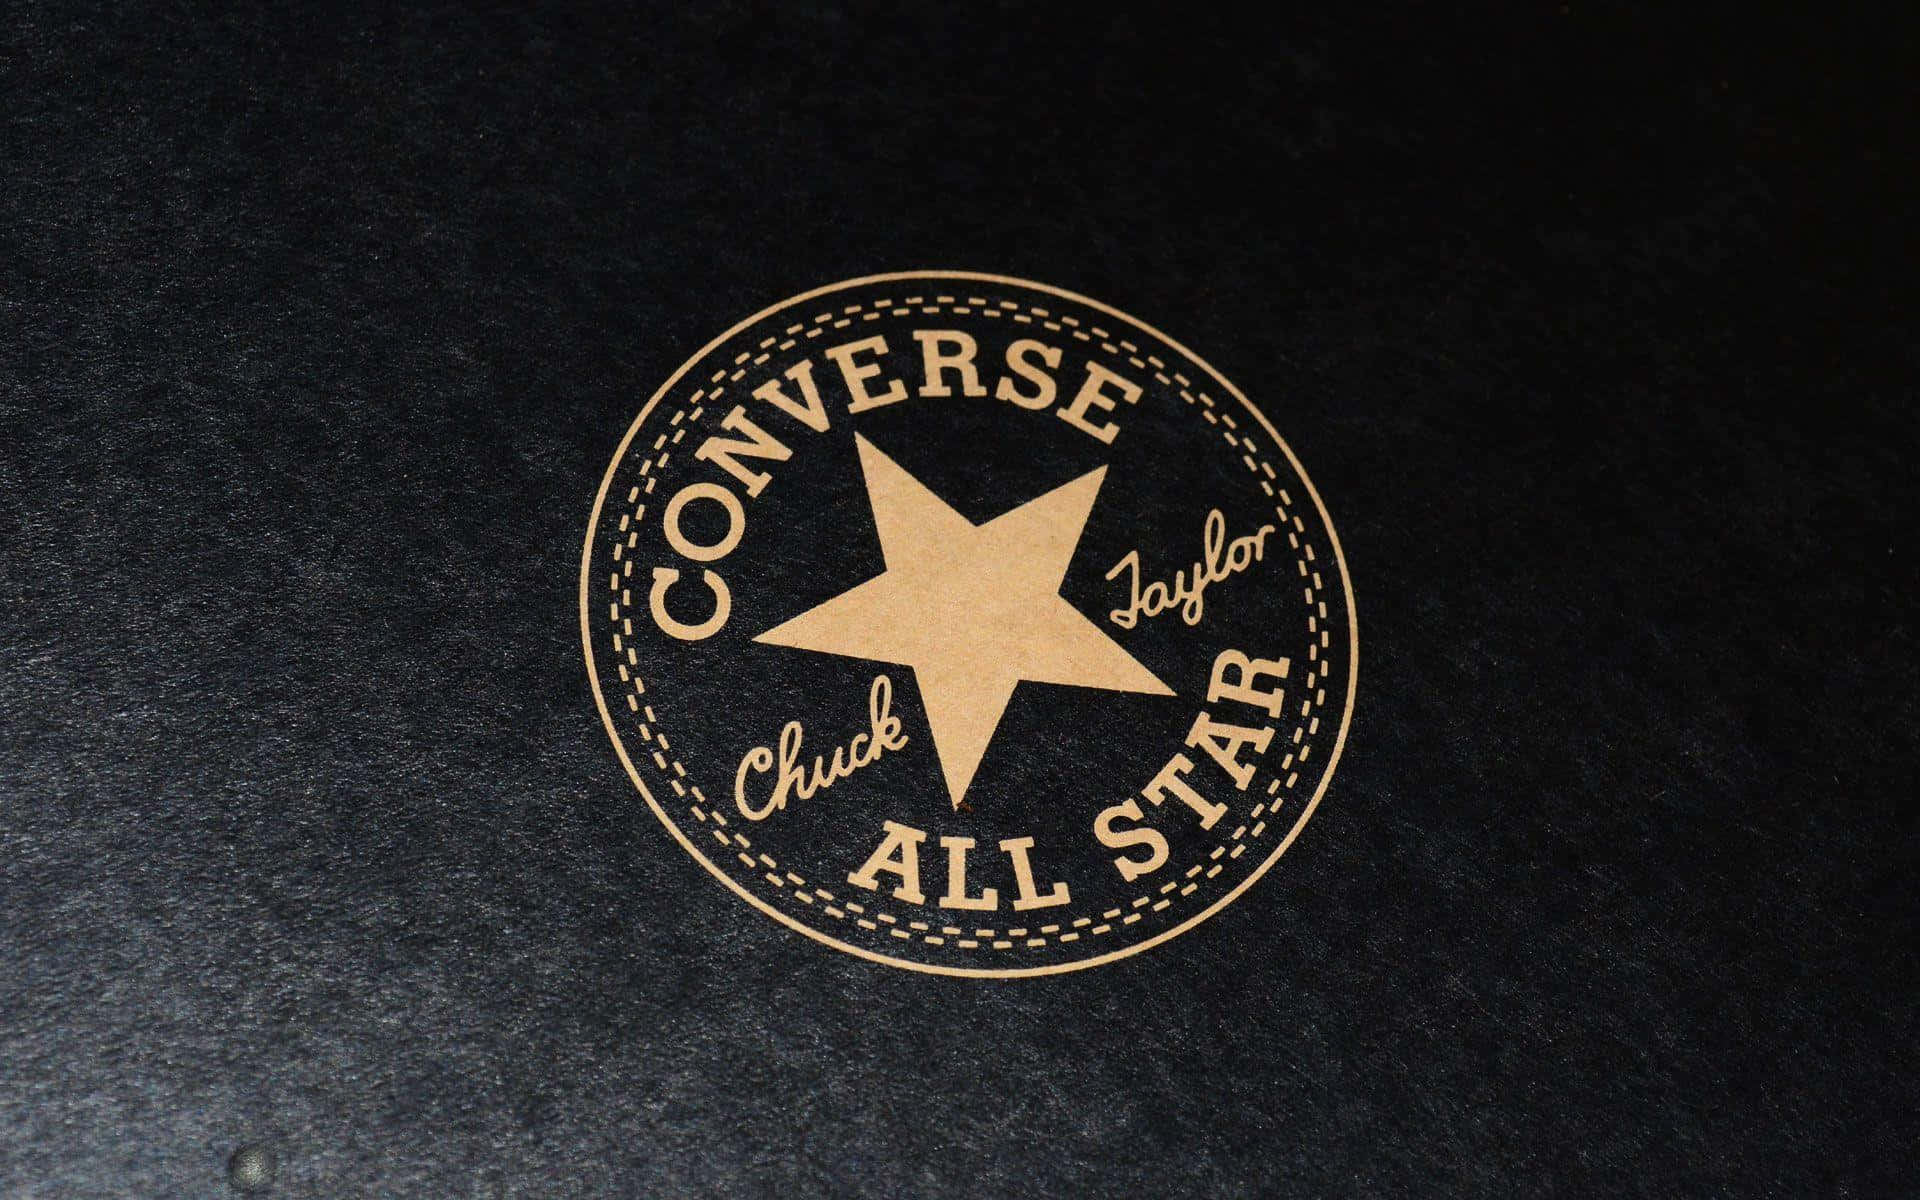 Logode Converse All Star Sobre Un Fondo Negro